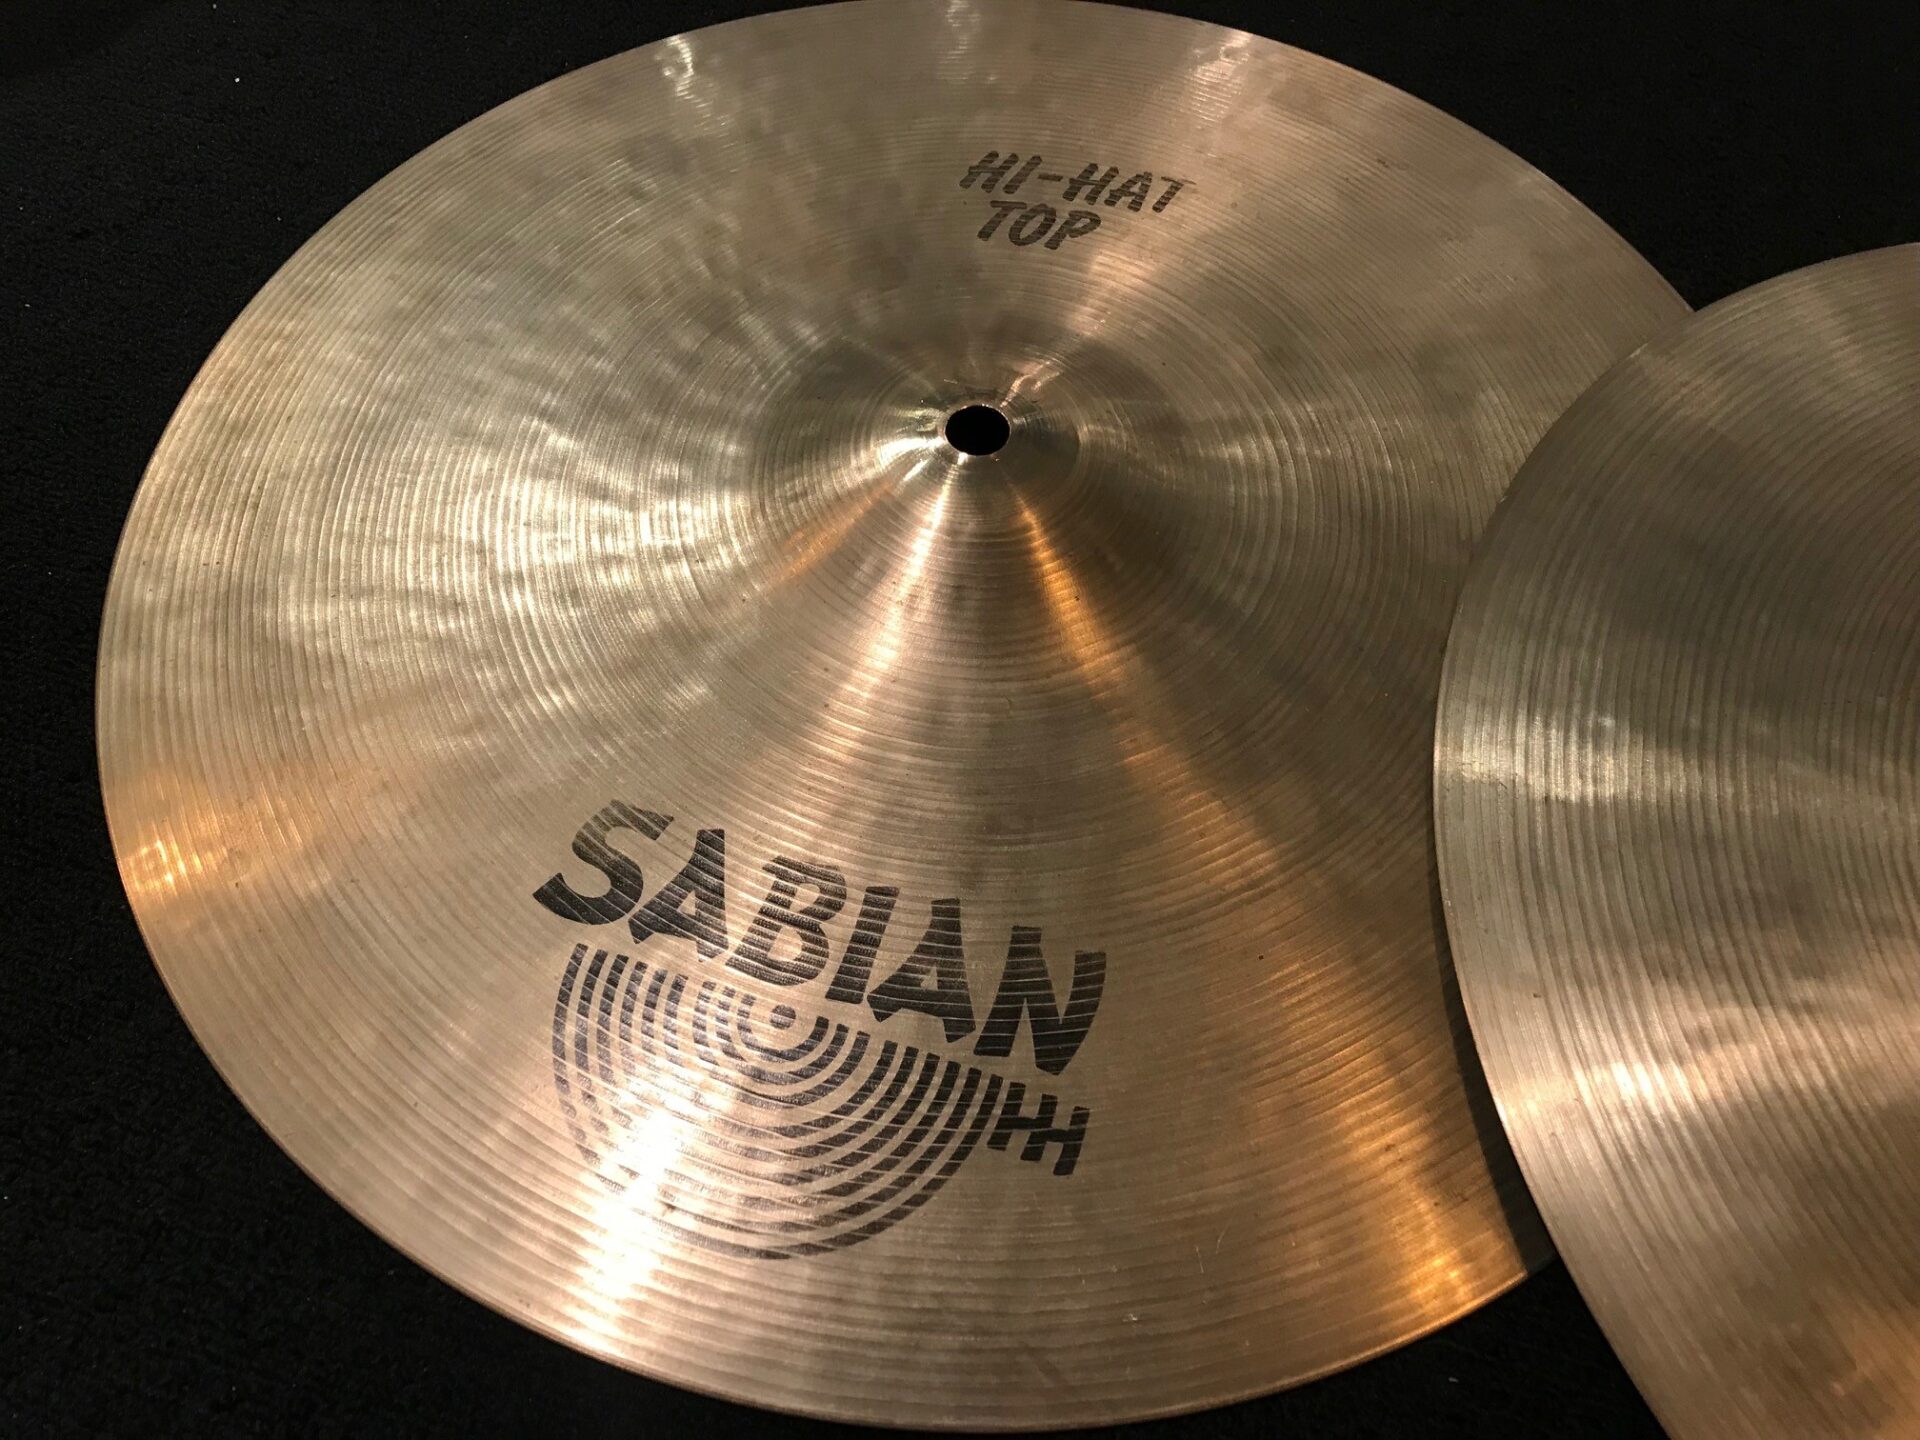 Sabian Used Cymbals 80's Vintage 14 in. Hi Hat Pair 1245g Top 970g 